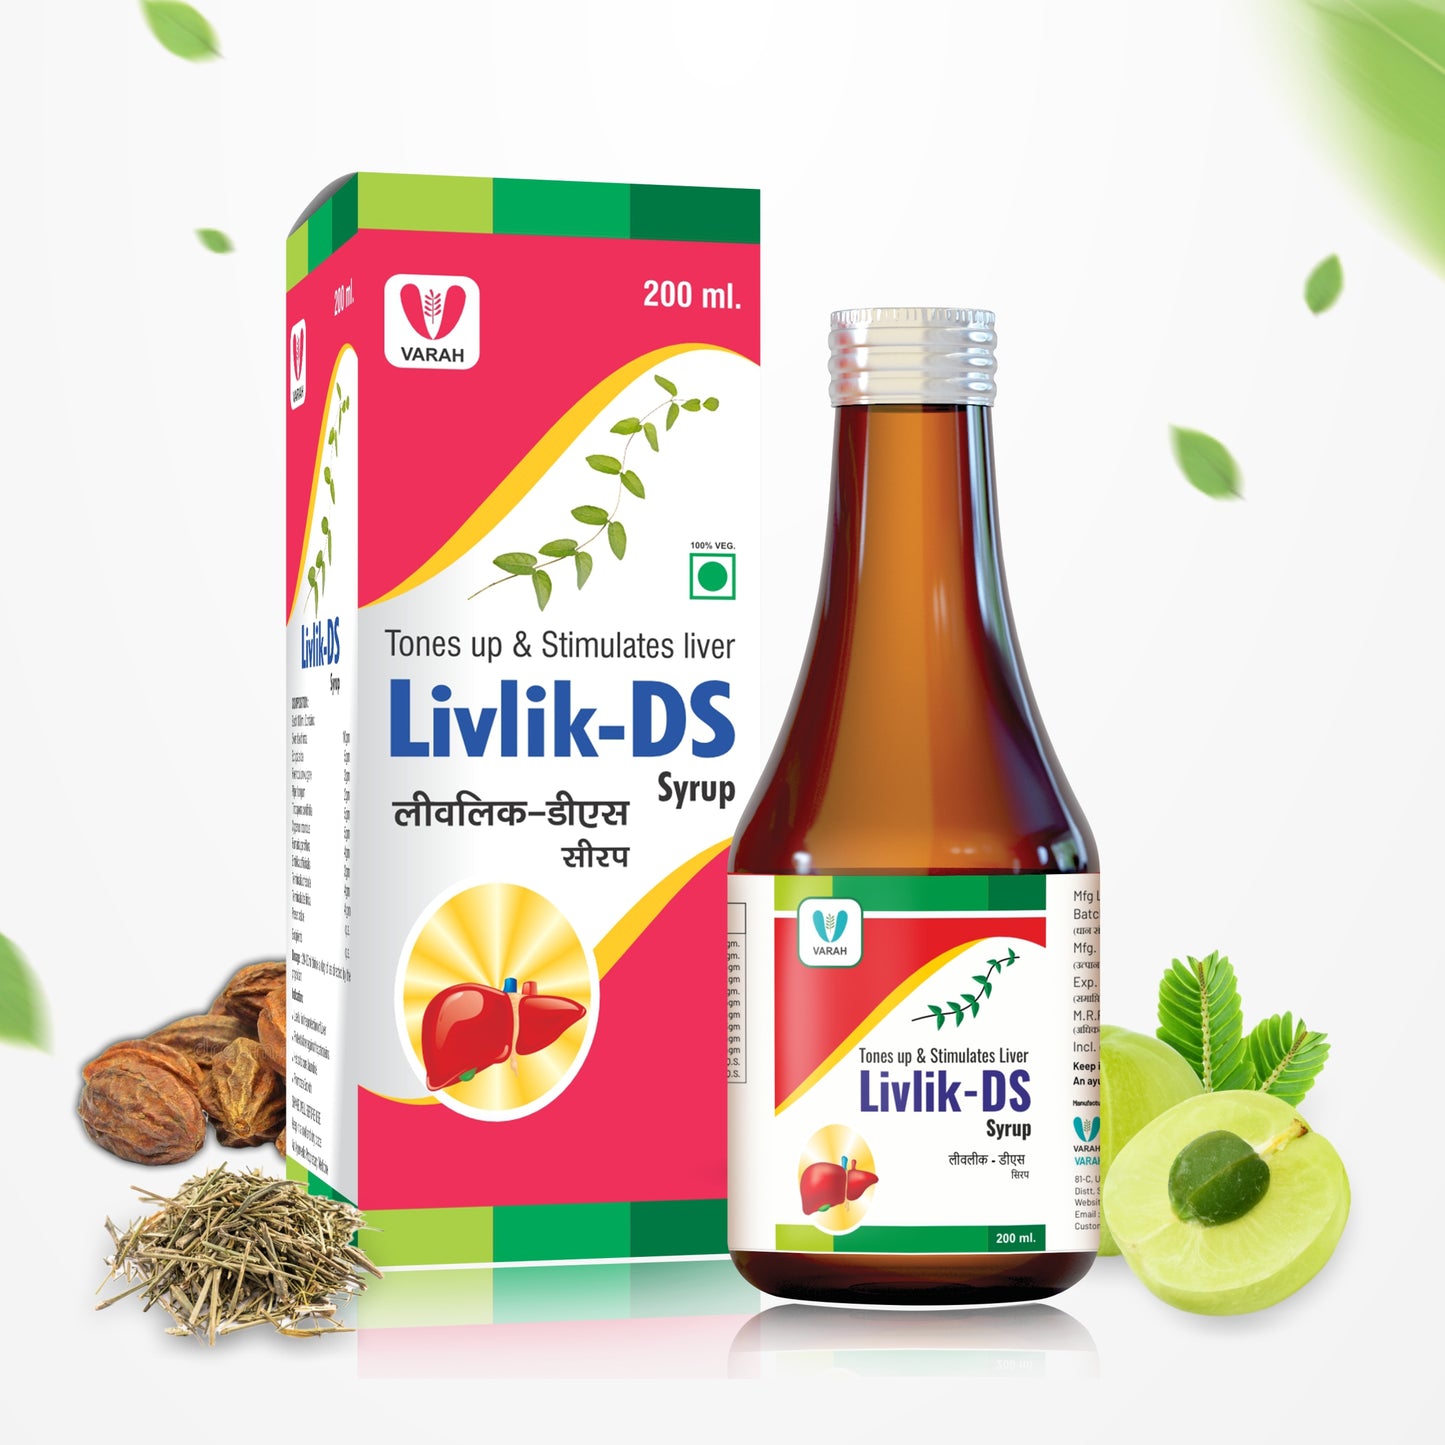 Varah Livlik-DS Syrup For Liver